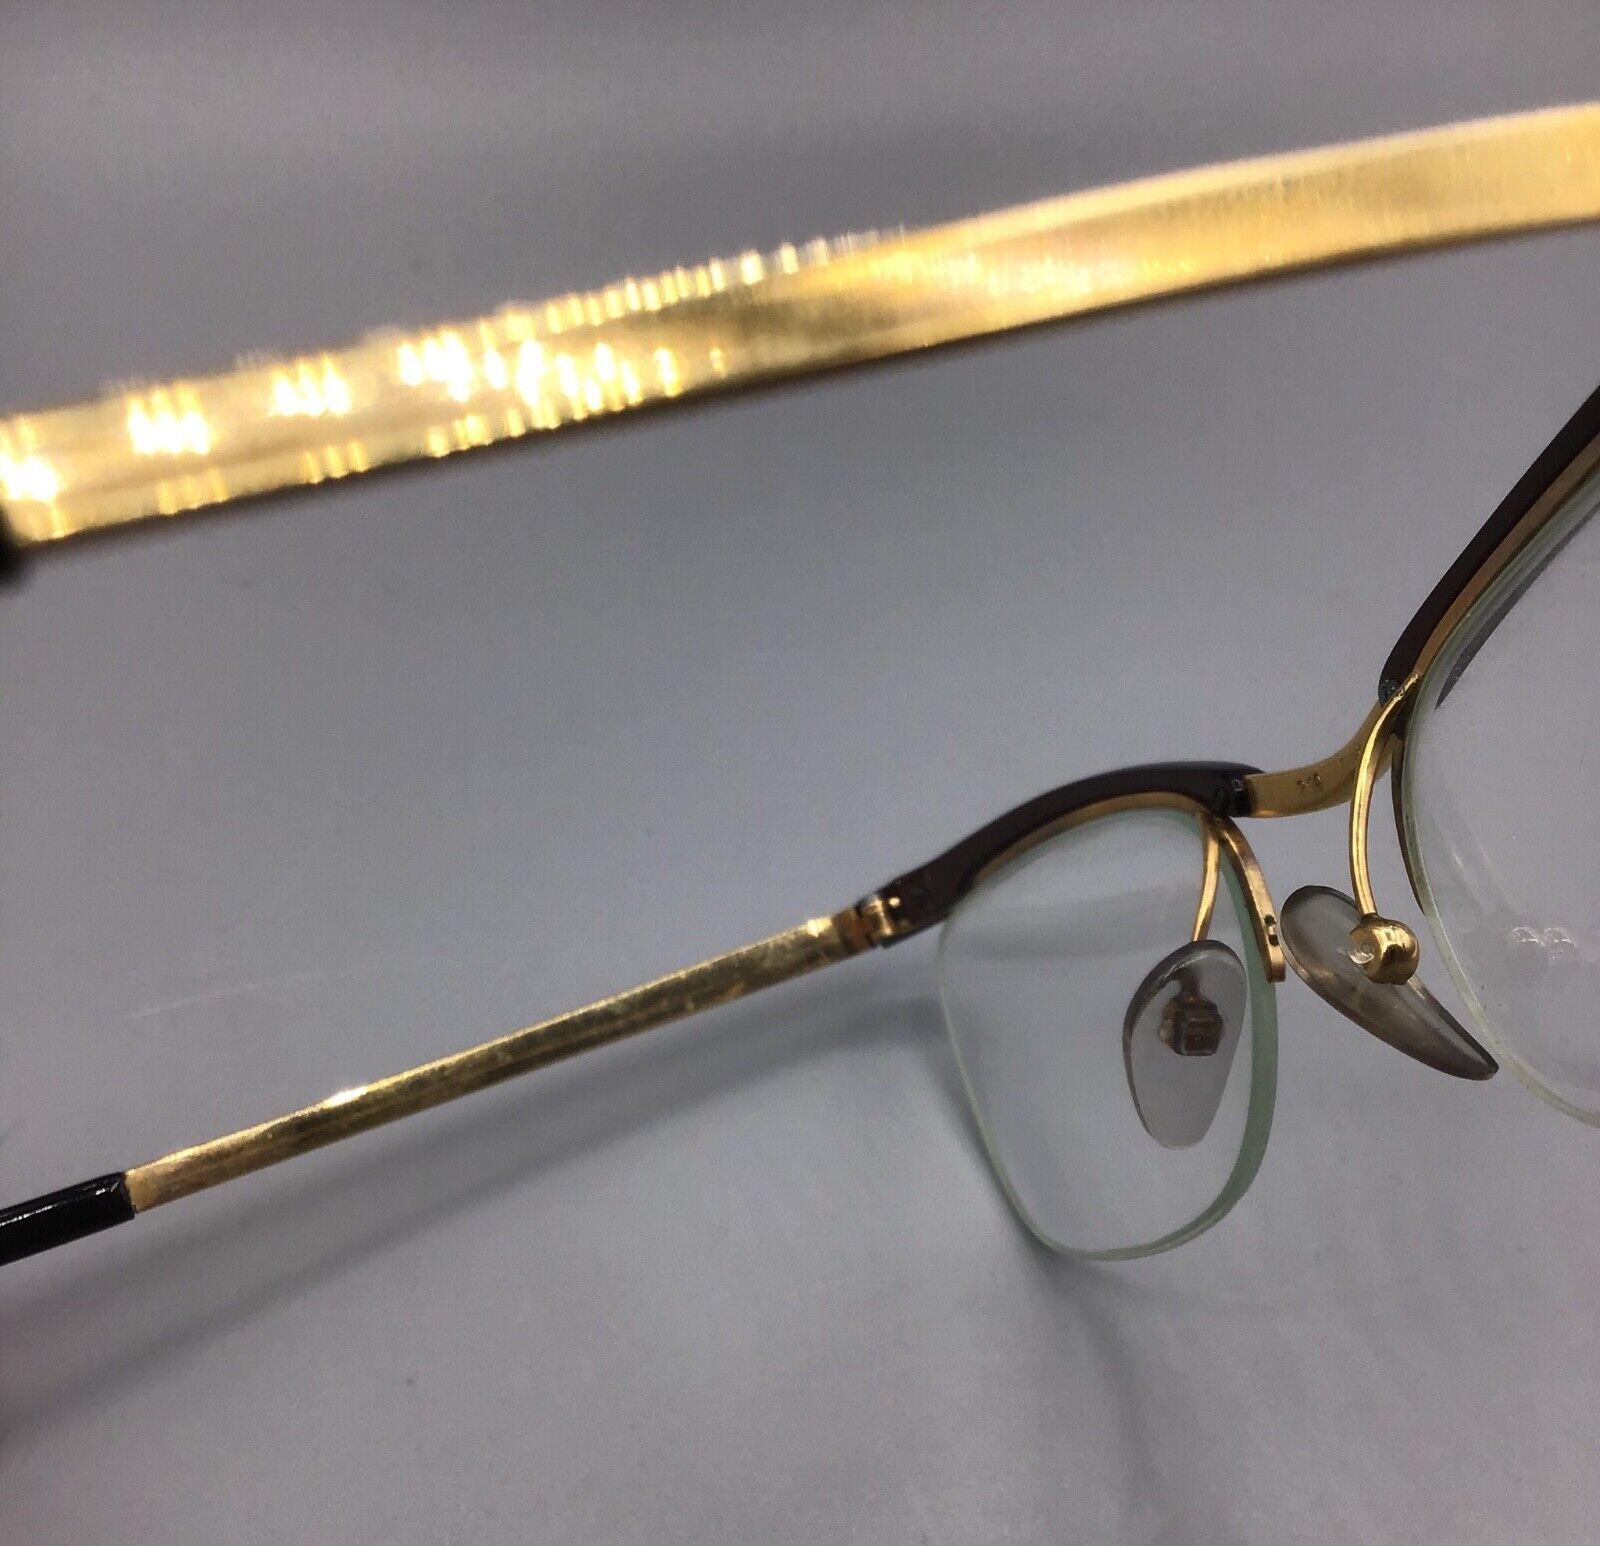 Essel Nylor lunettes vintage Paris brillen occhiale eyewear + case eyeglasses